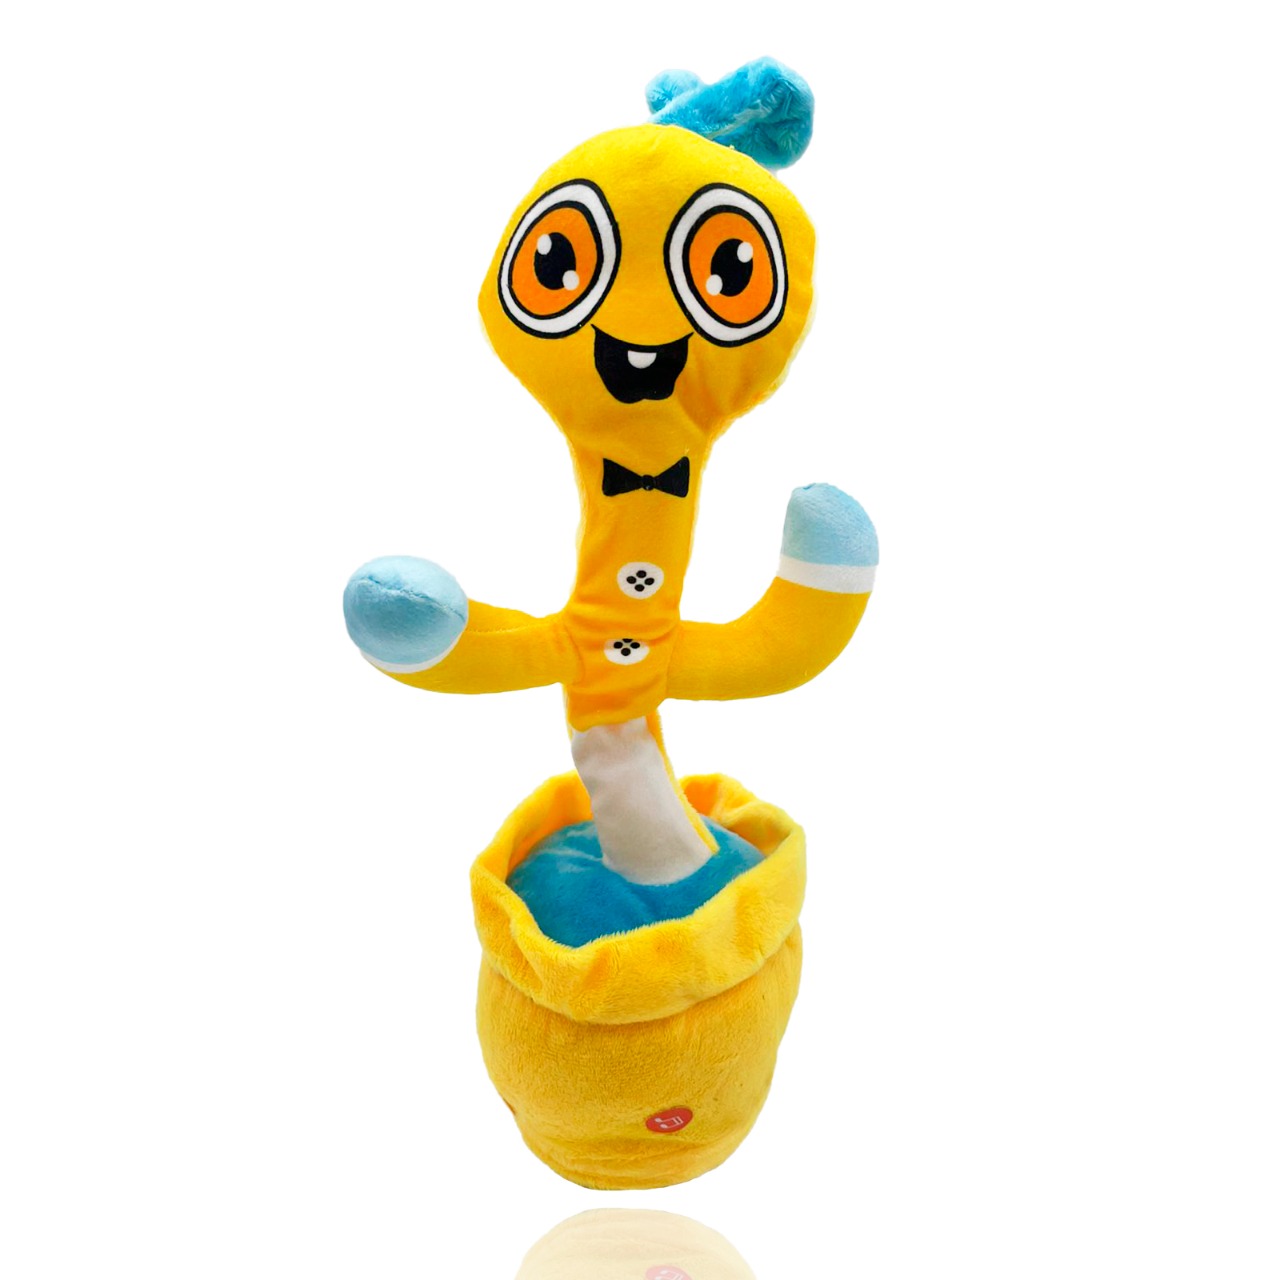 Танцующий и поющий кактус Market toys lab Ребенок Хаги Ваги Поппи Плейтайм, желтый, 35 см раскраска с хаги ваги фиолетовая